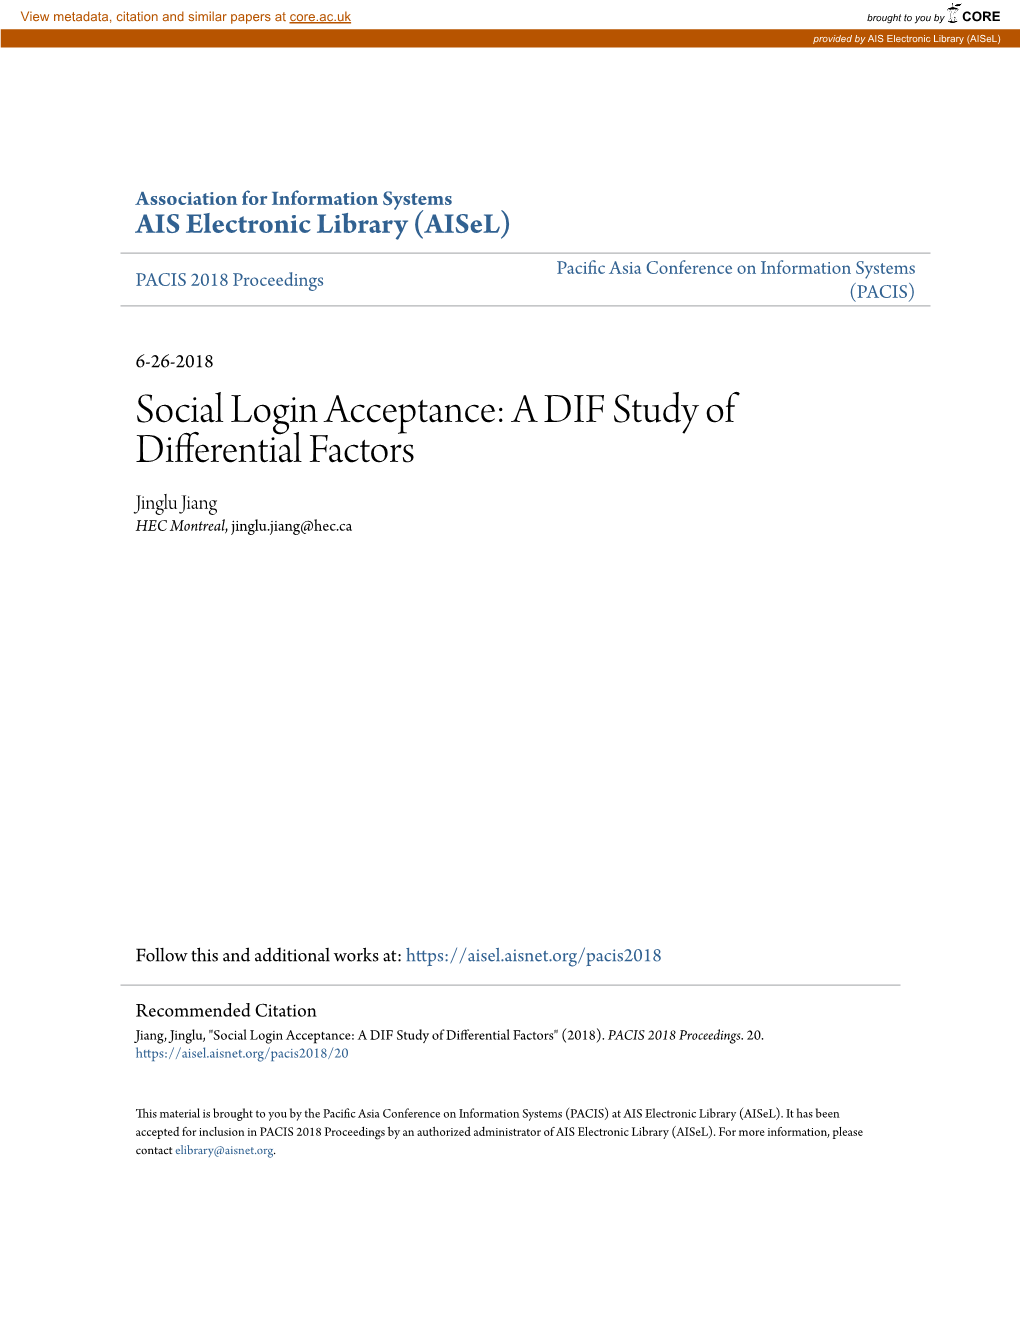 Social Login Acceptance: a DIF Study of Differential Factors Jinglu Jiang HEC Montreal, Jinglu.Jiang@Hec.Ca